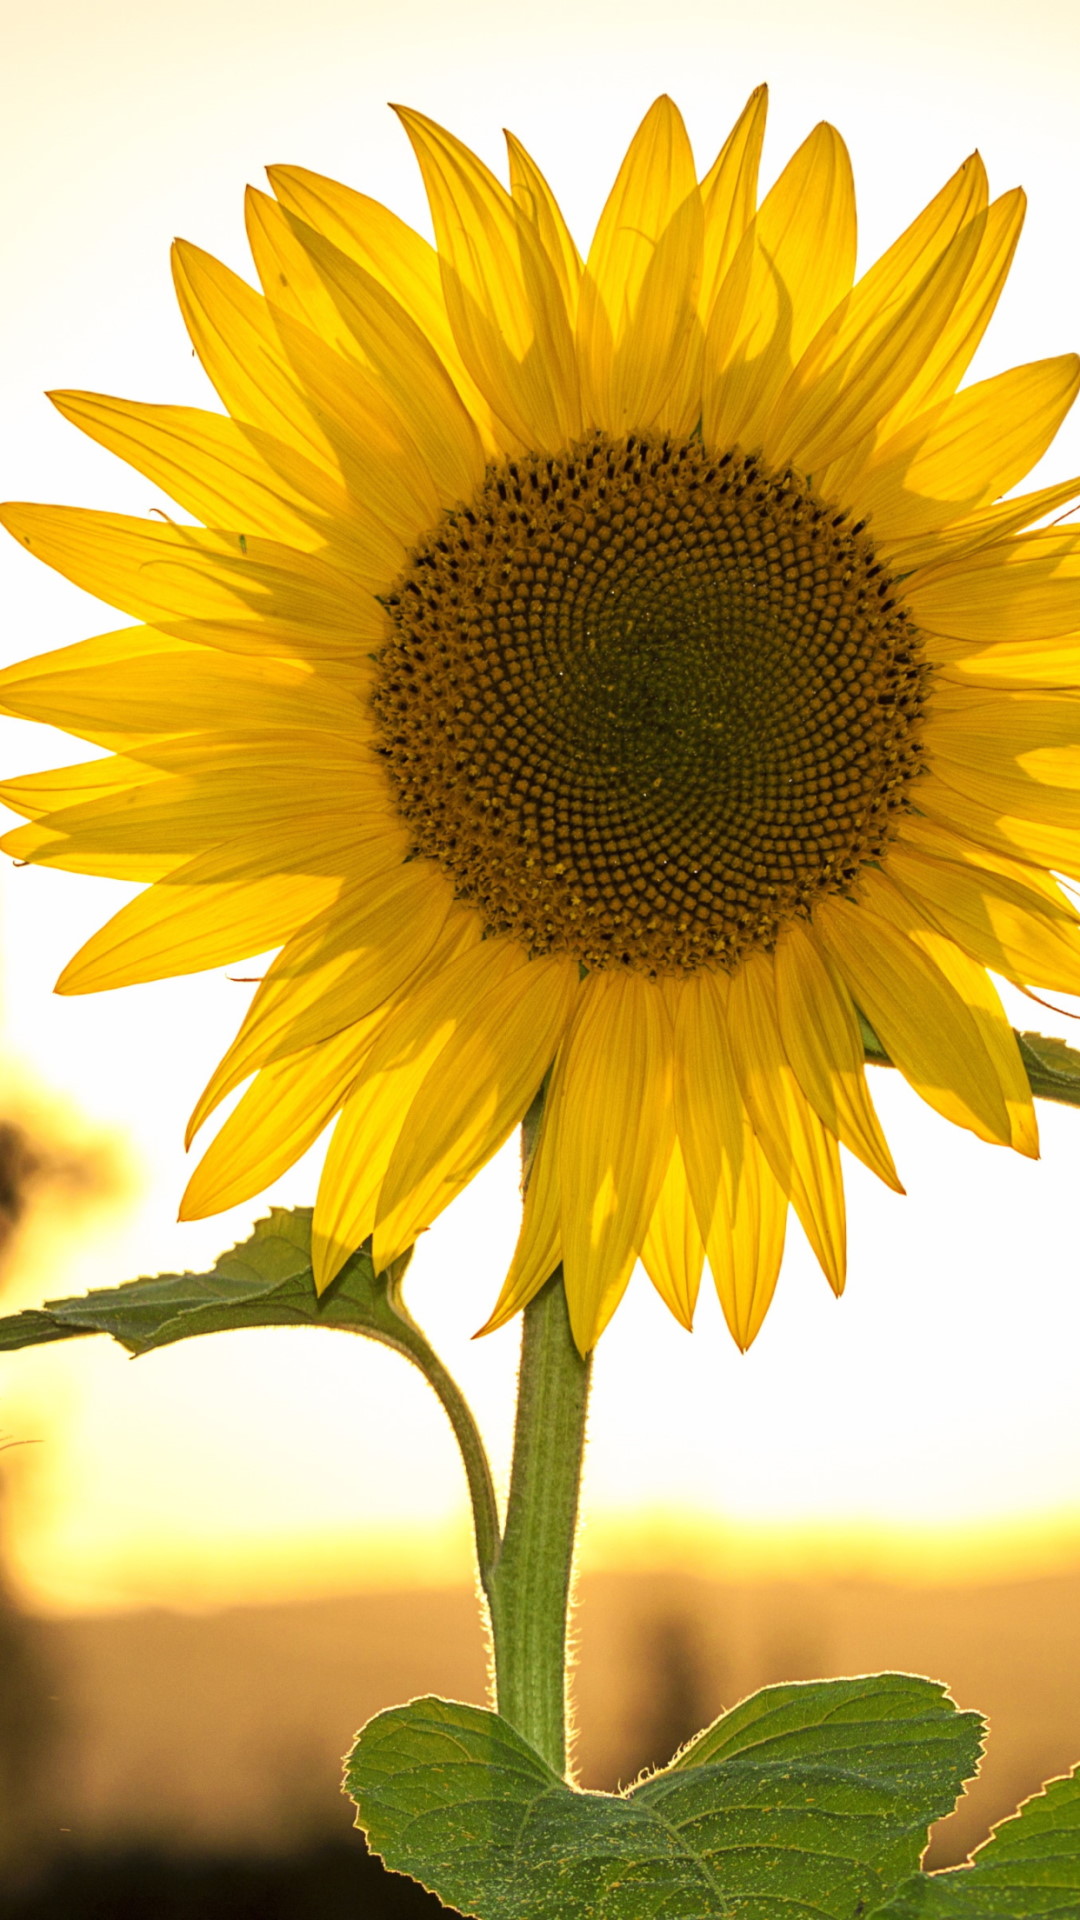 Sunflower in the sunset light wallpaper 1080x1920